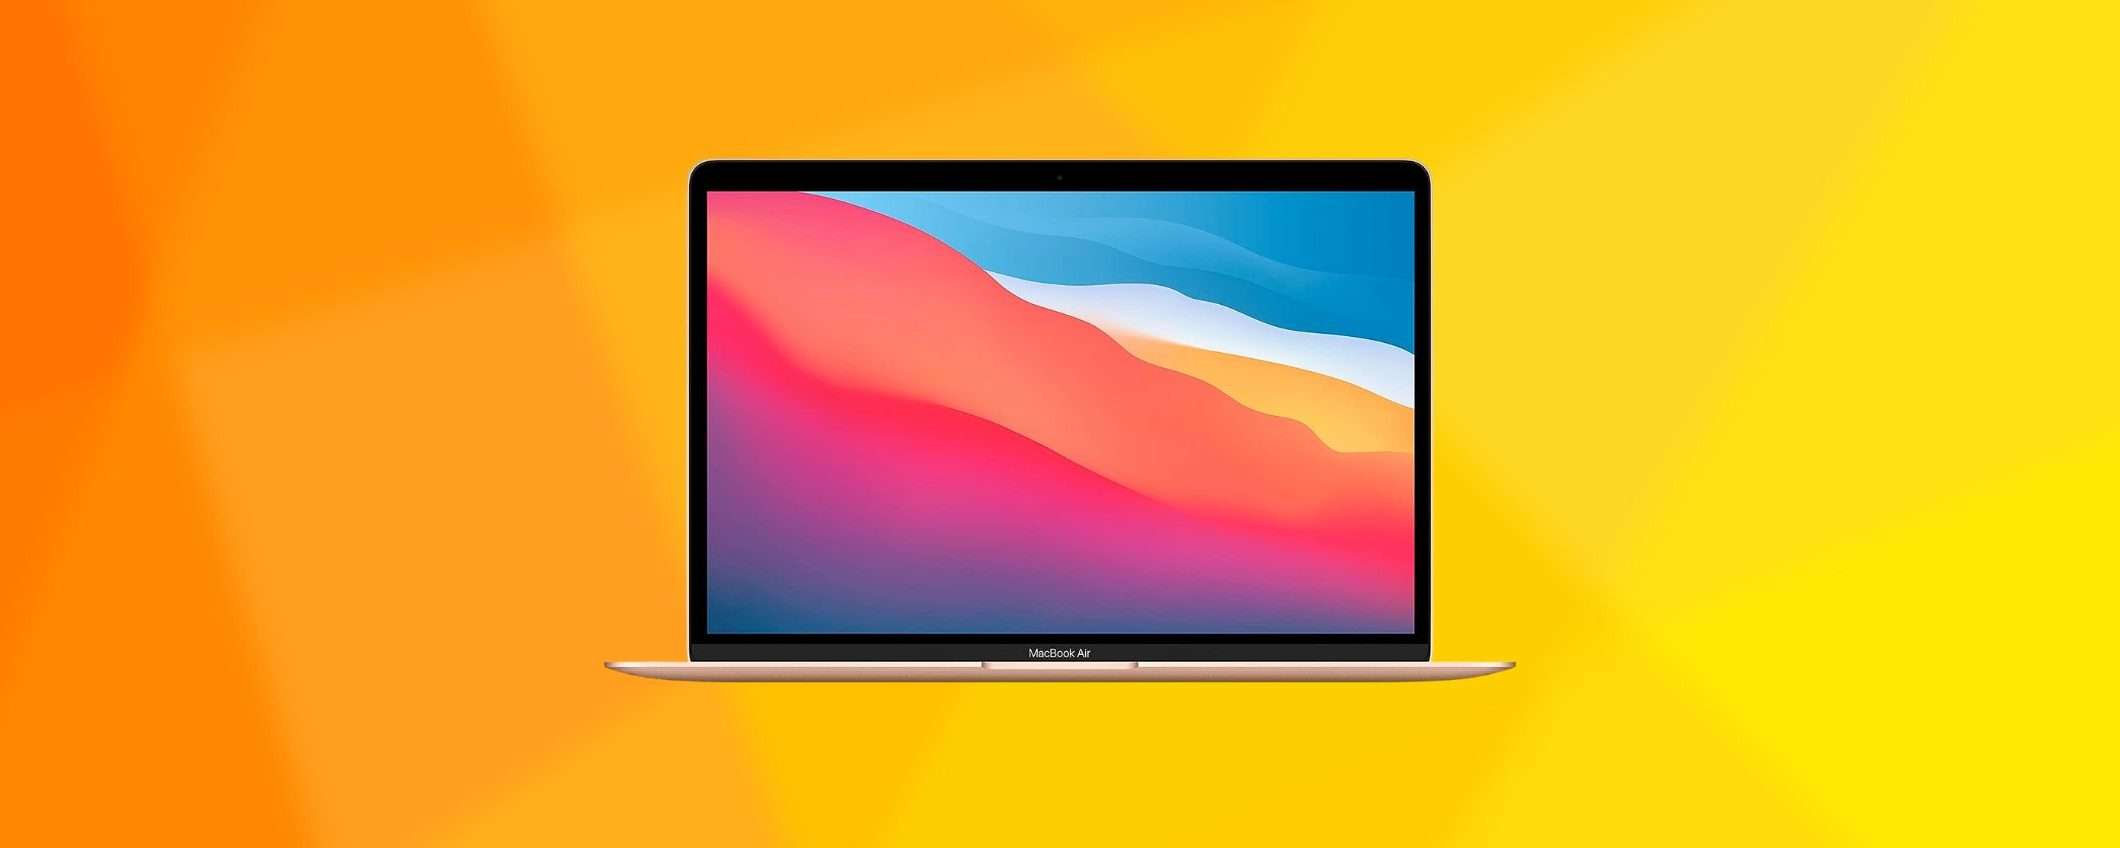 MacBook Air con chip M1 con 8/256GB scontato di 330€ su Amazon